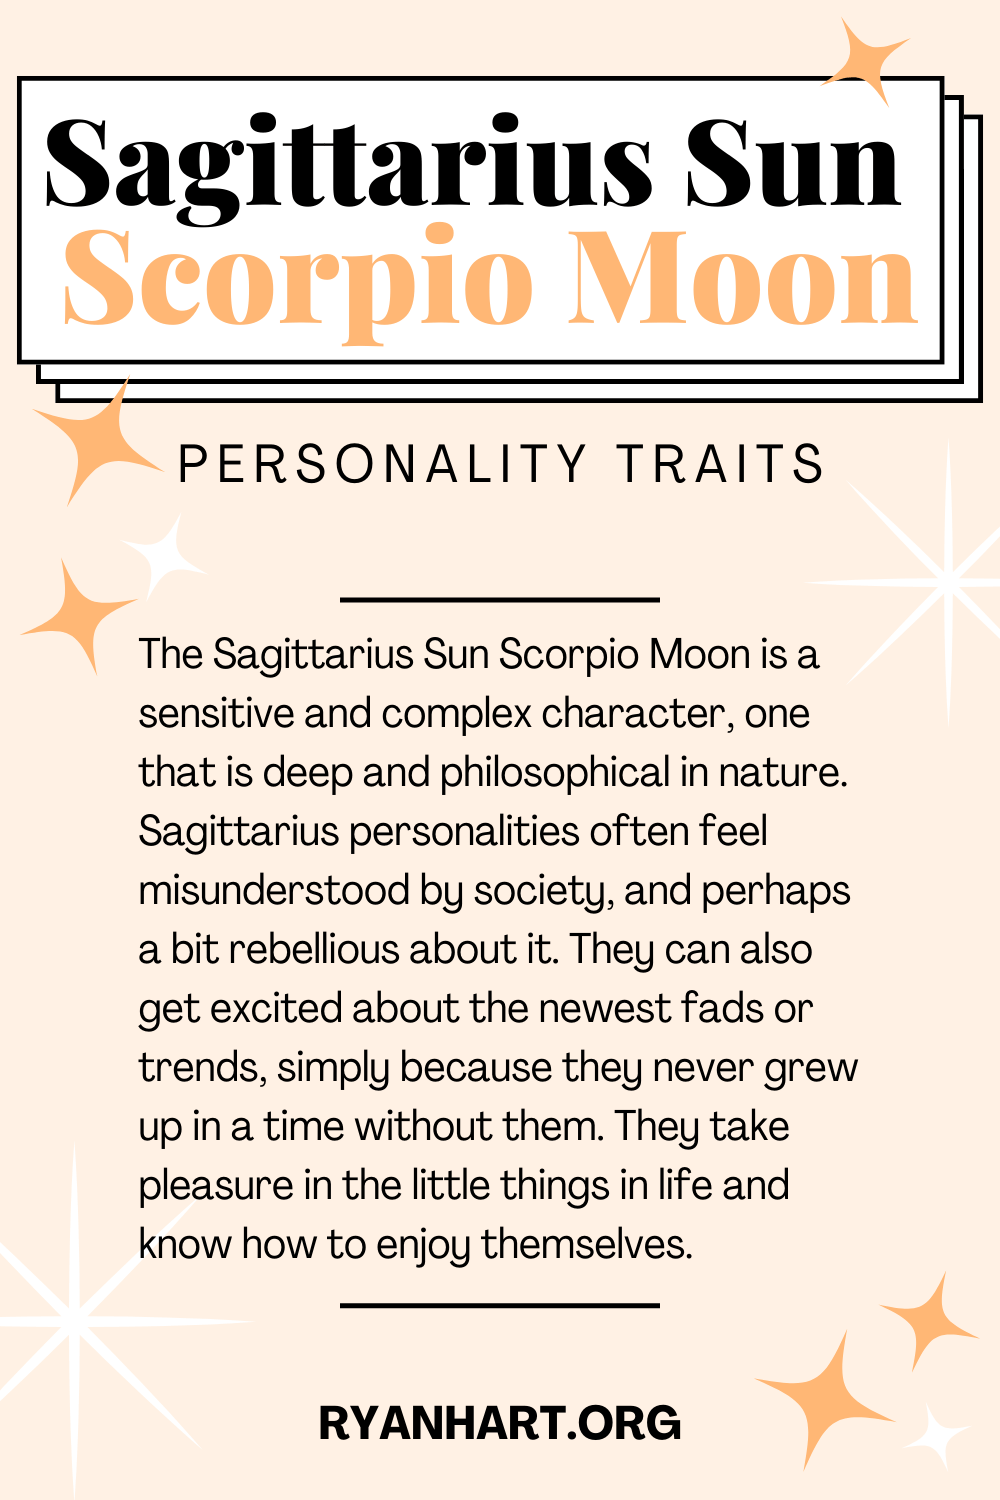 Scorpio Sun And Sagittarius Moon: An Overview